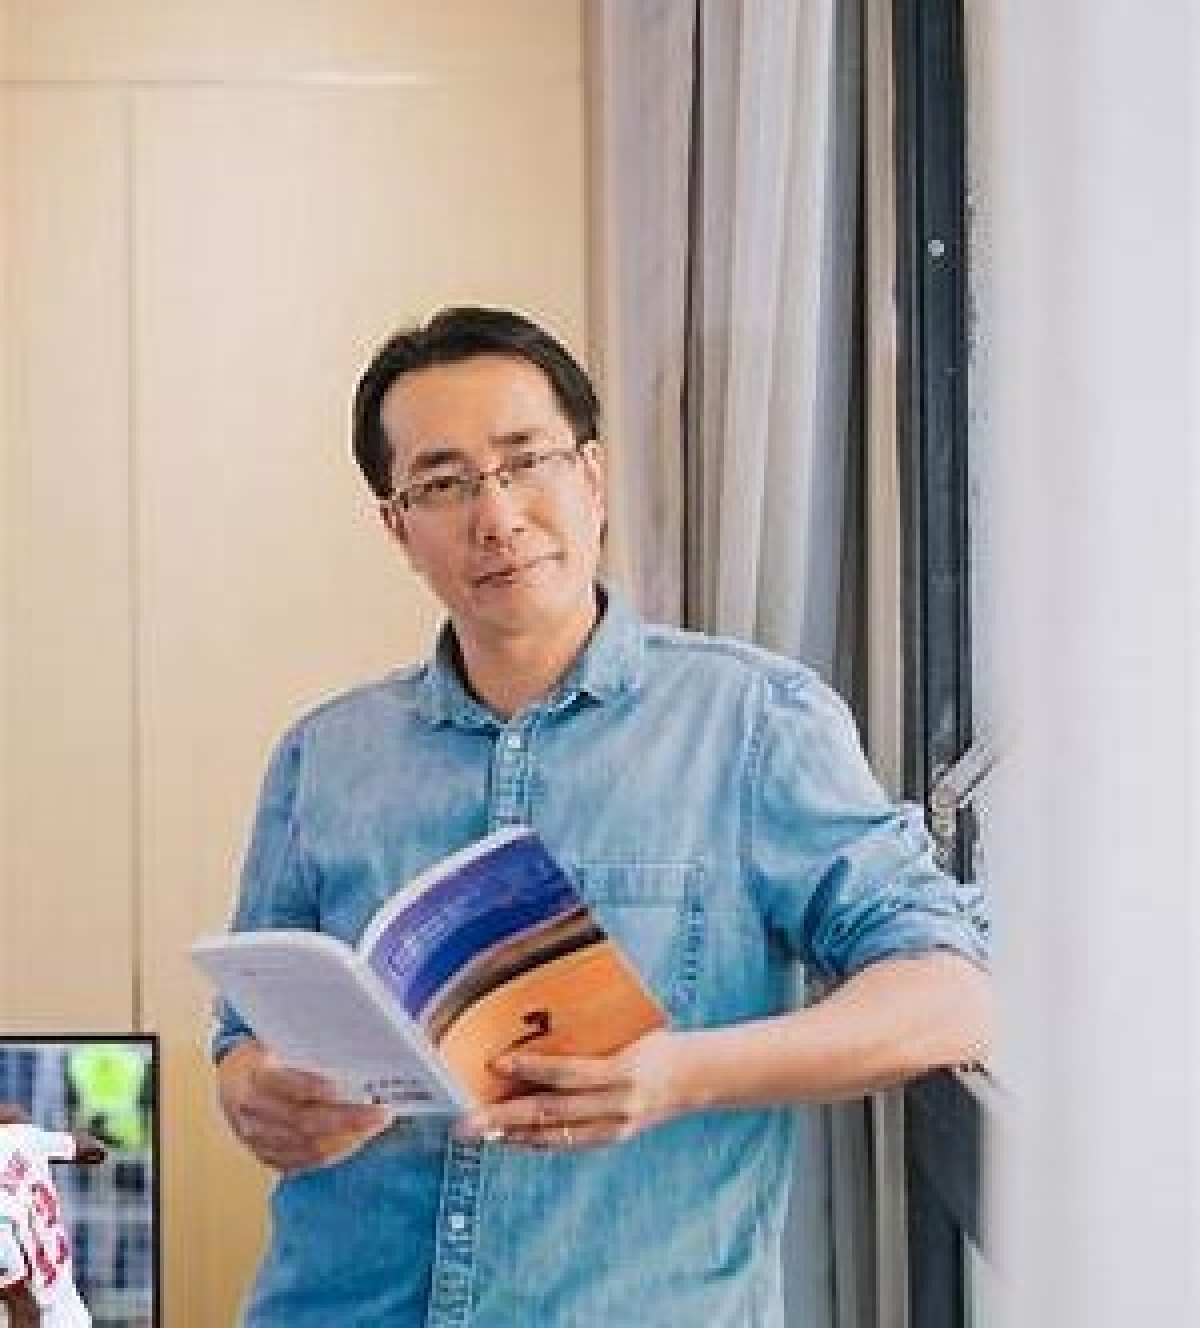 Nhà văn, nhà báo Trương Anh Ngọc: "Bóc phốt" ai đó trên mạng xã hội là một việc không nên làm. Ảnh: Internet